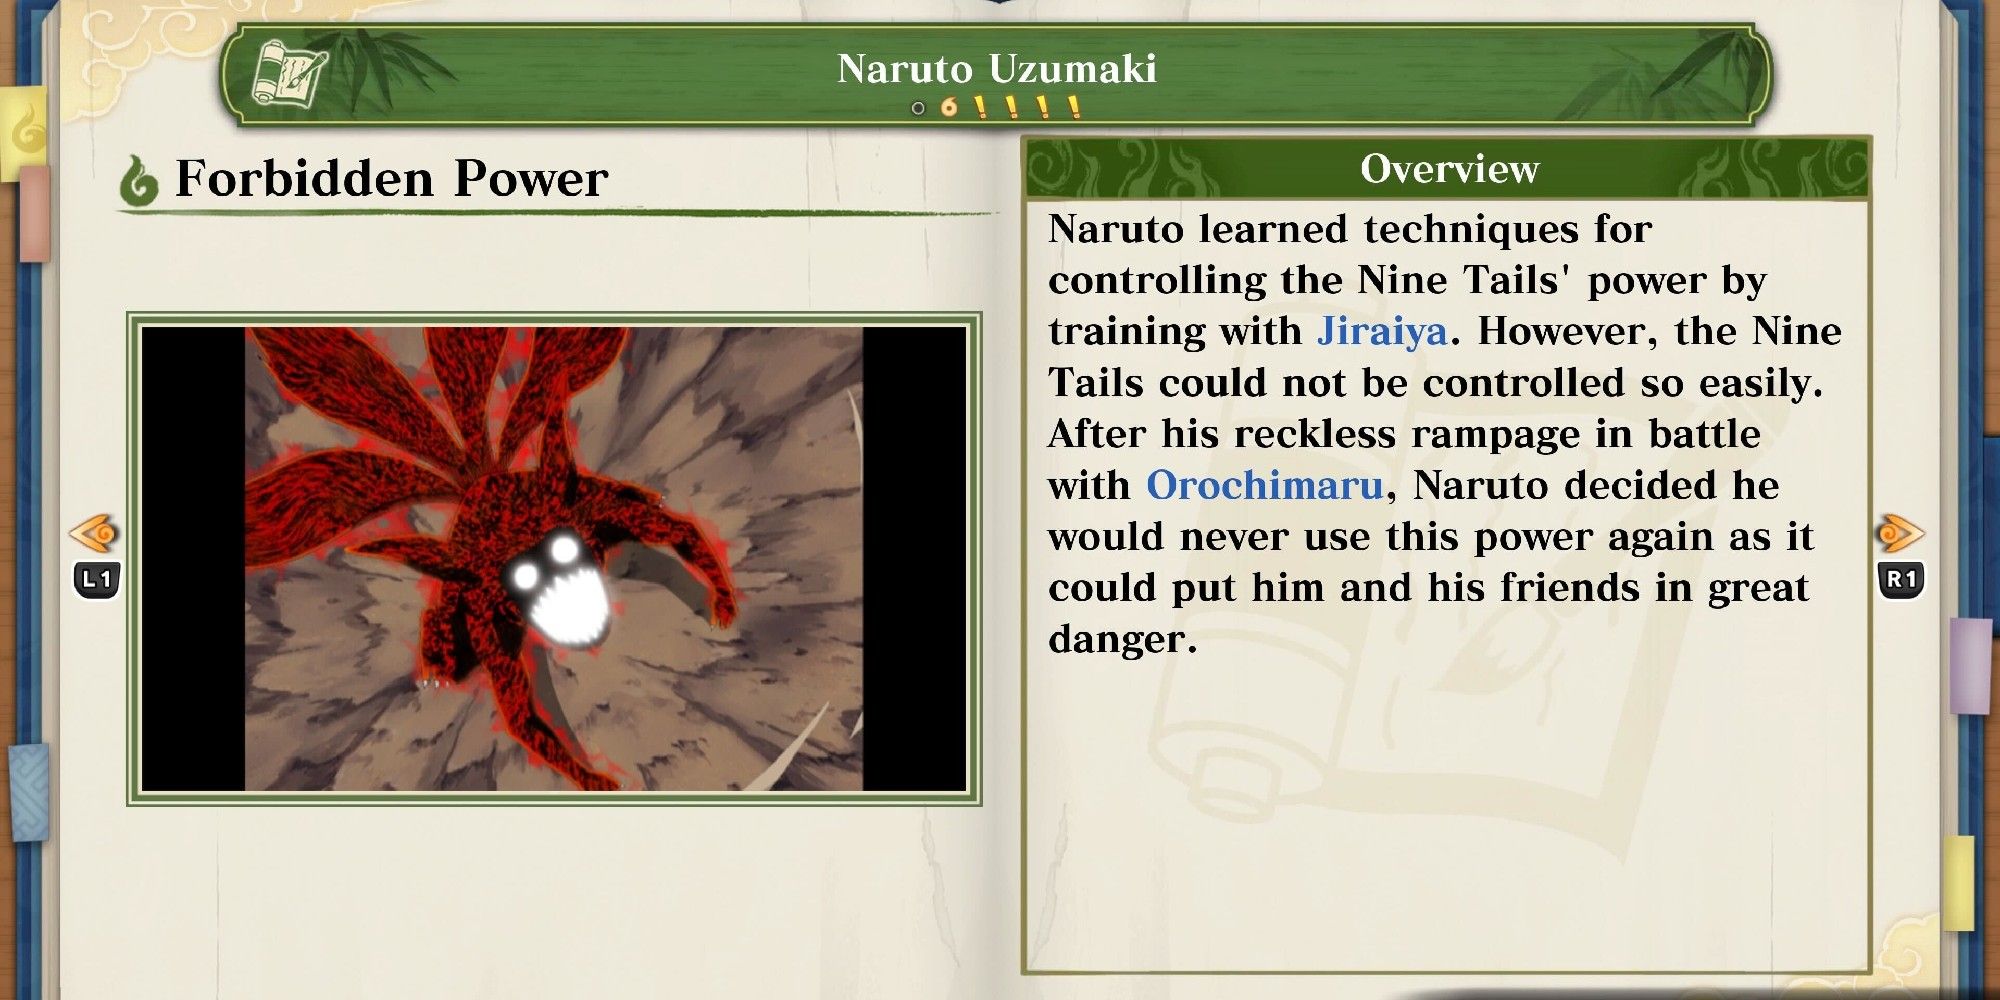 Naruto Uzumaki's entry in the encyclopedia